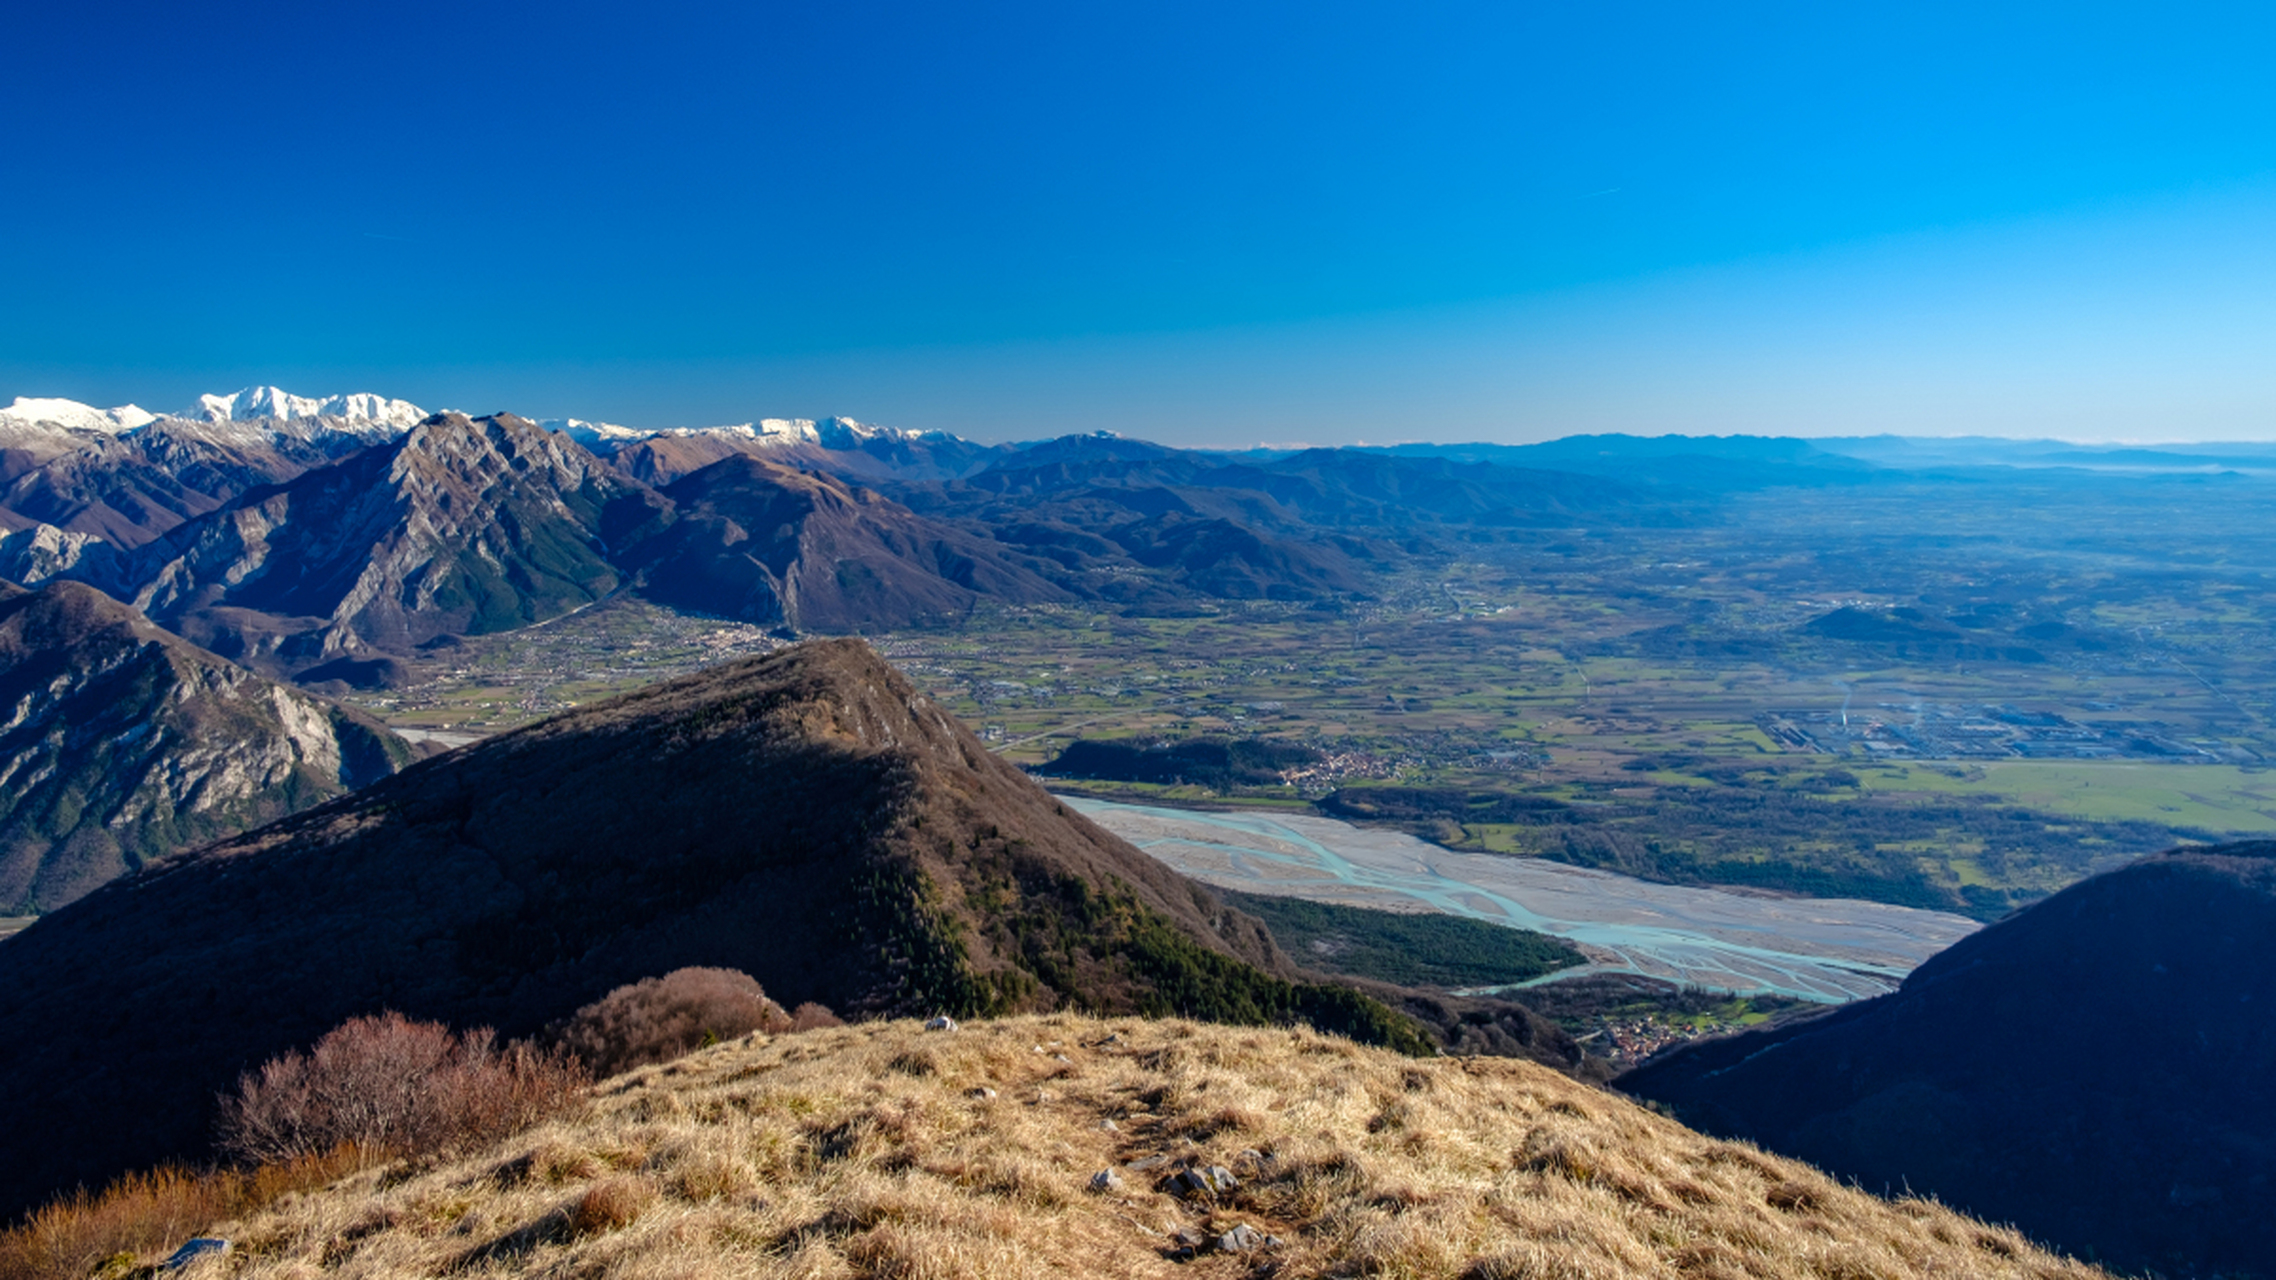 阿巴拉契亚山脉,是一座宛如诗意般的自然奇观,它傲然屹立在大地之上